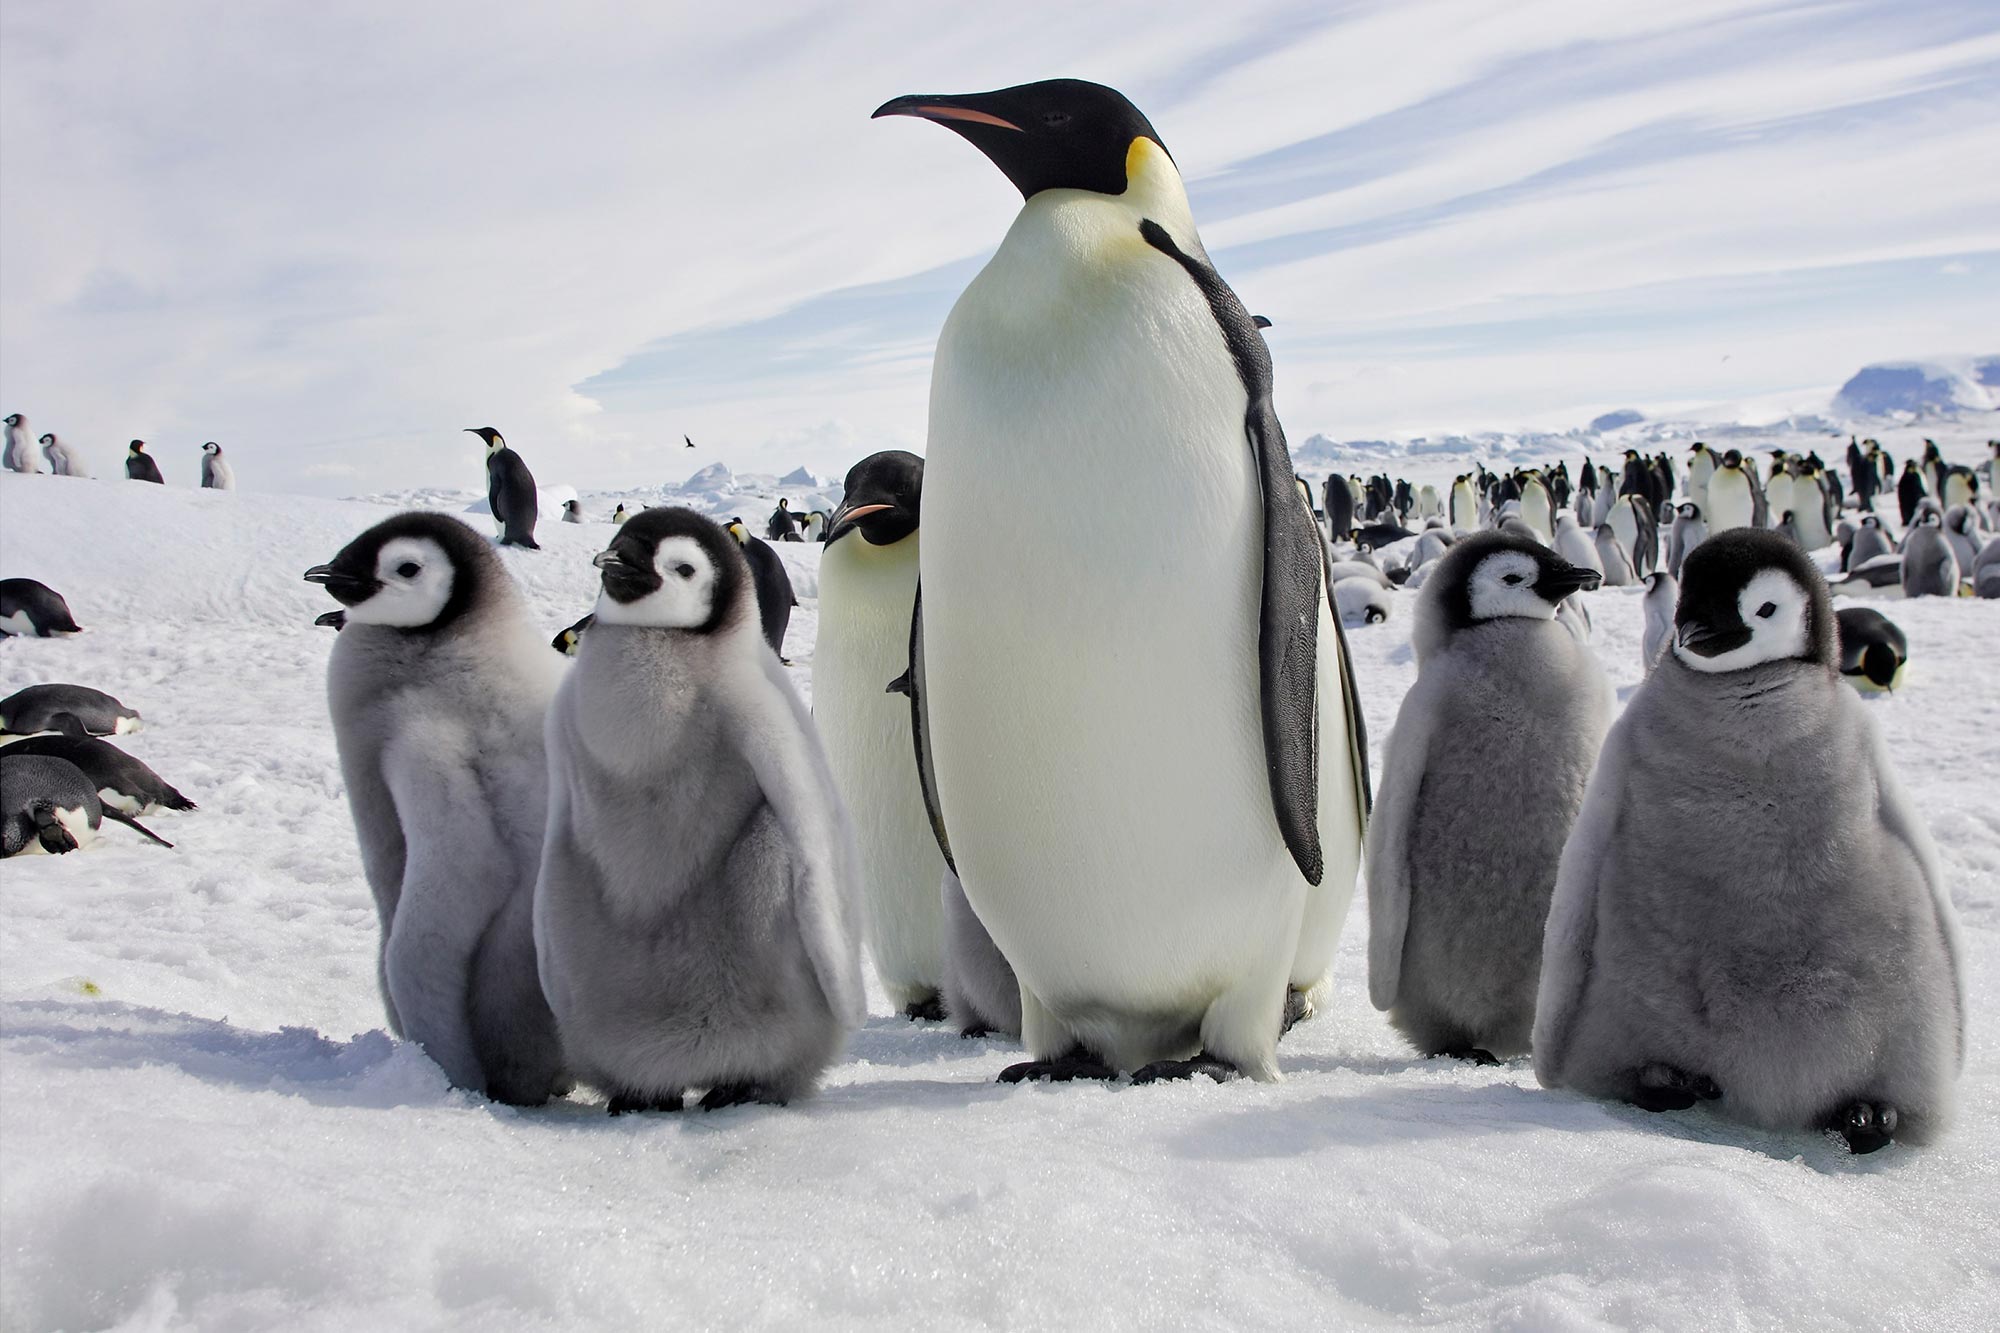 antarctic-sea-ice-crisis-emperor-penguin-colonies-suffer-catastrophic-breeding-failure